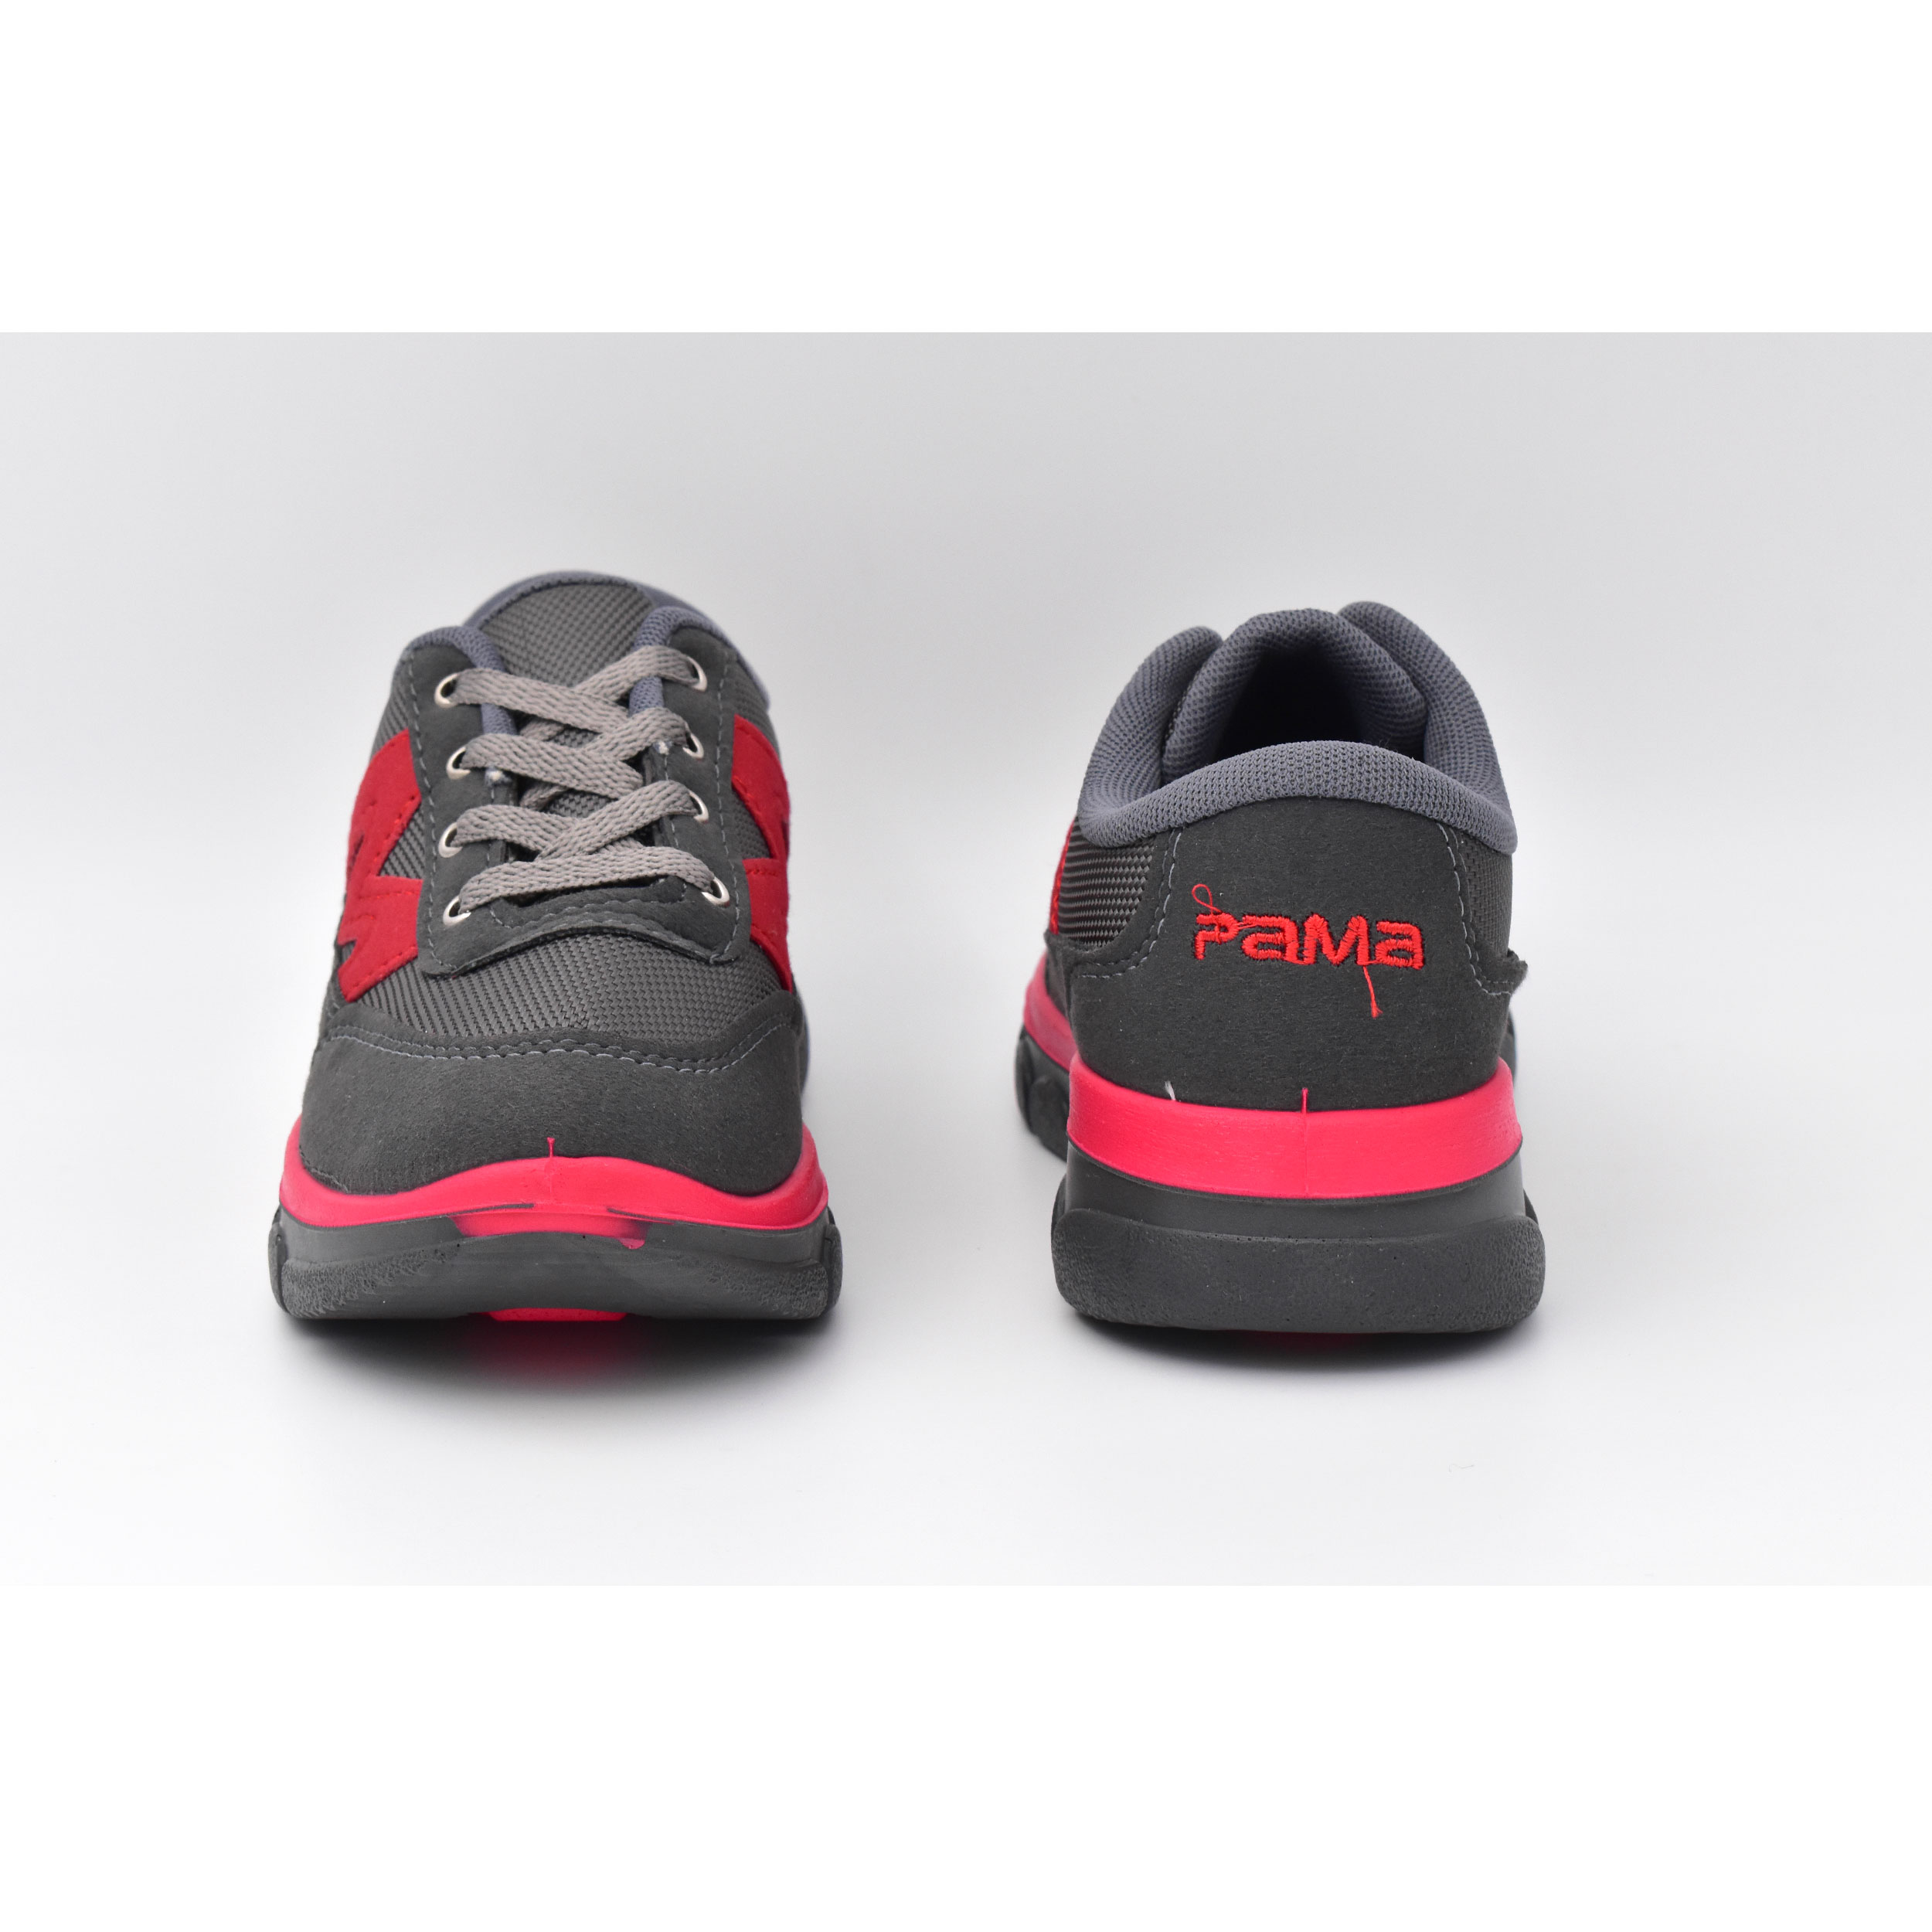 کفش پیاده روی زنانه پاما مدل پالرمو کد G1309 -  - 11